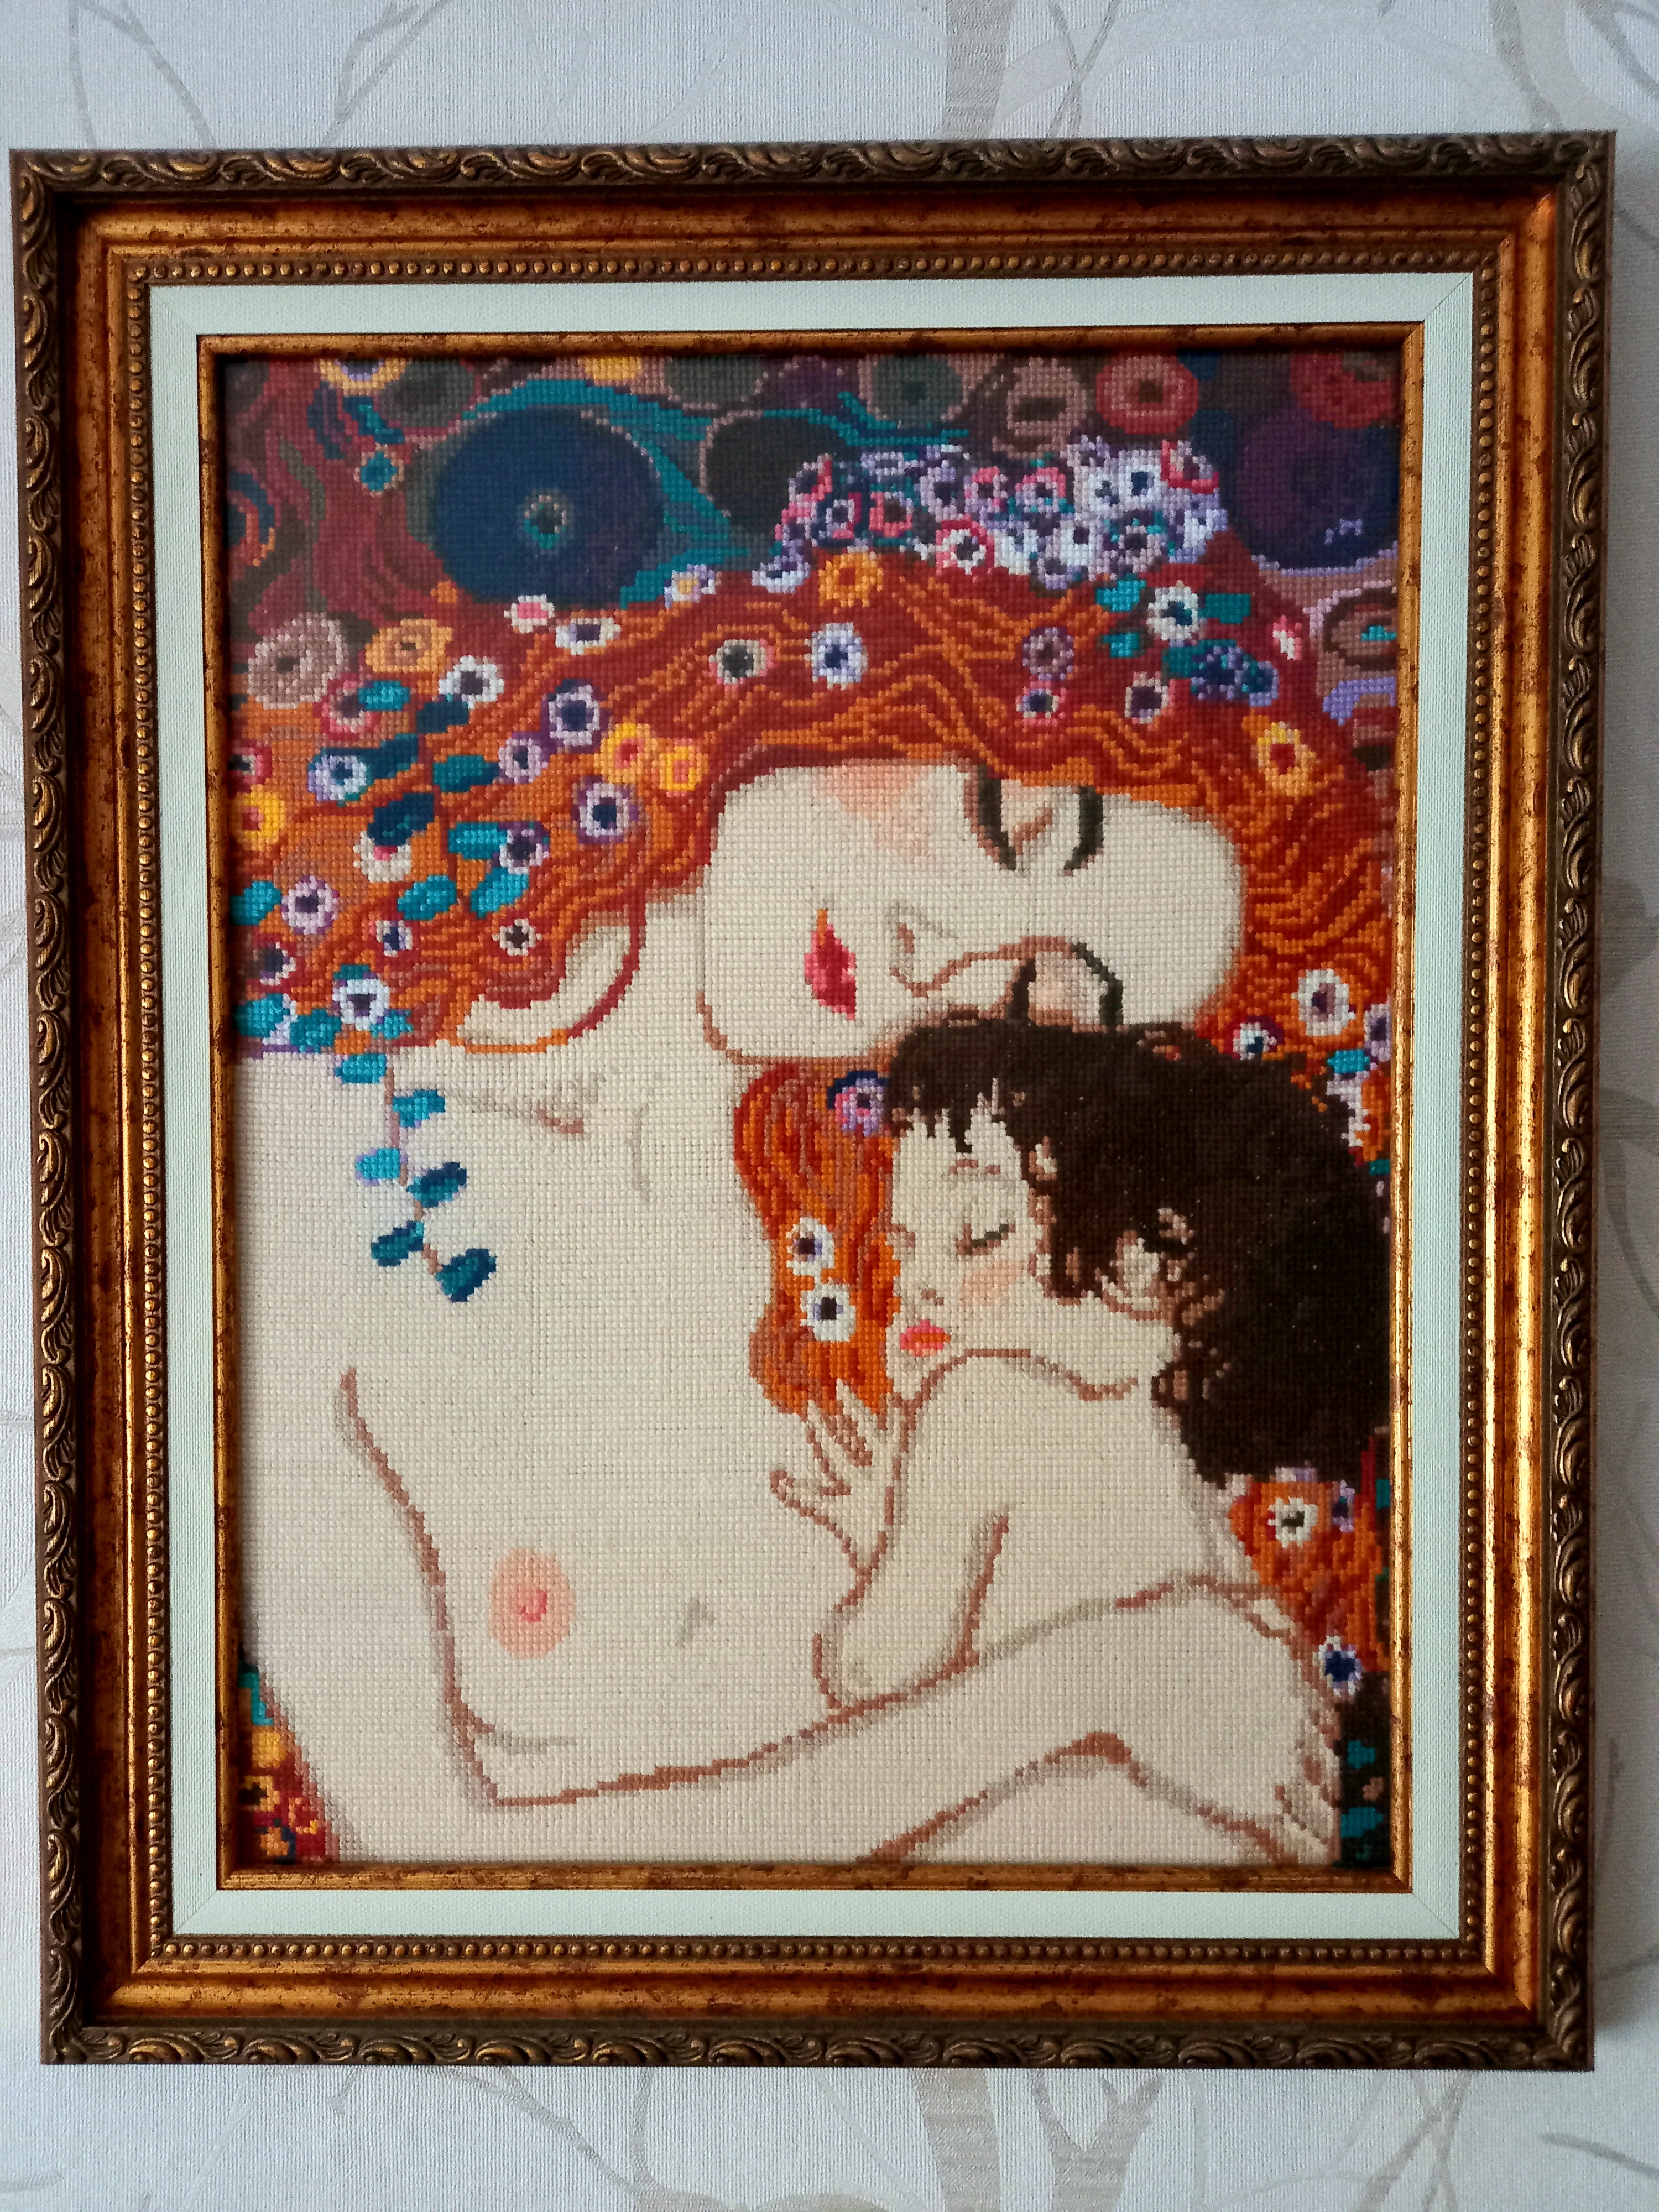 916 "Материнская любовь" по мотивам картины Г. Климта